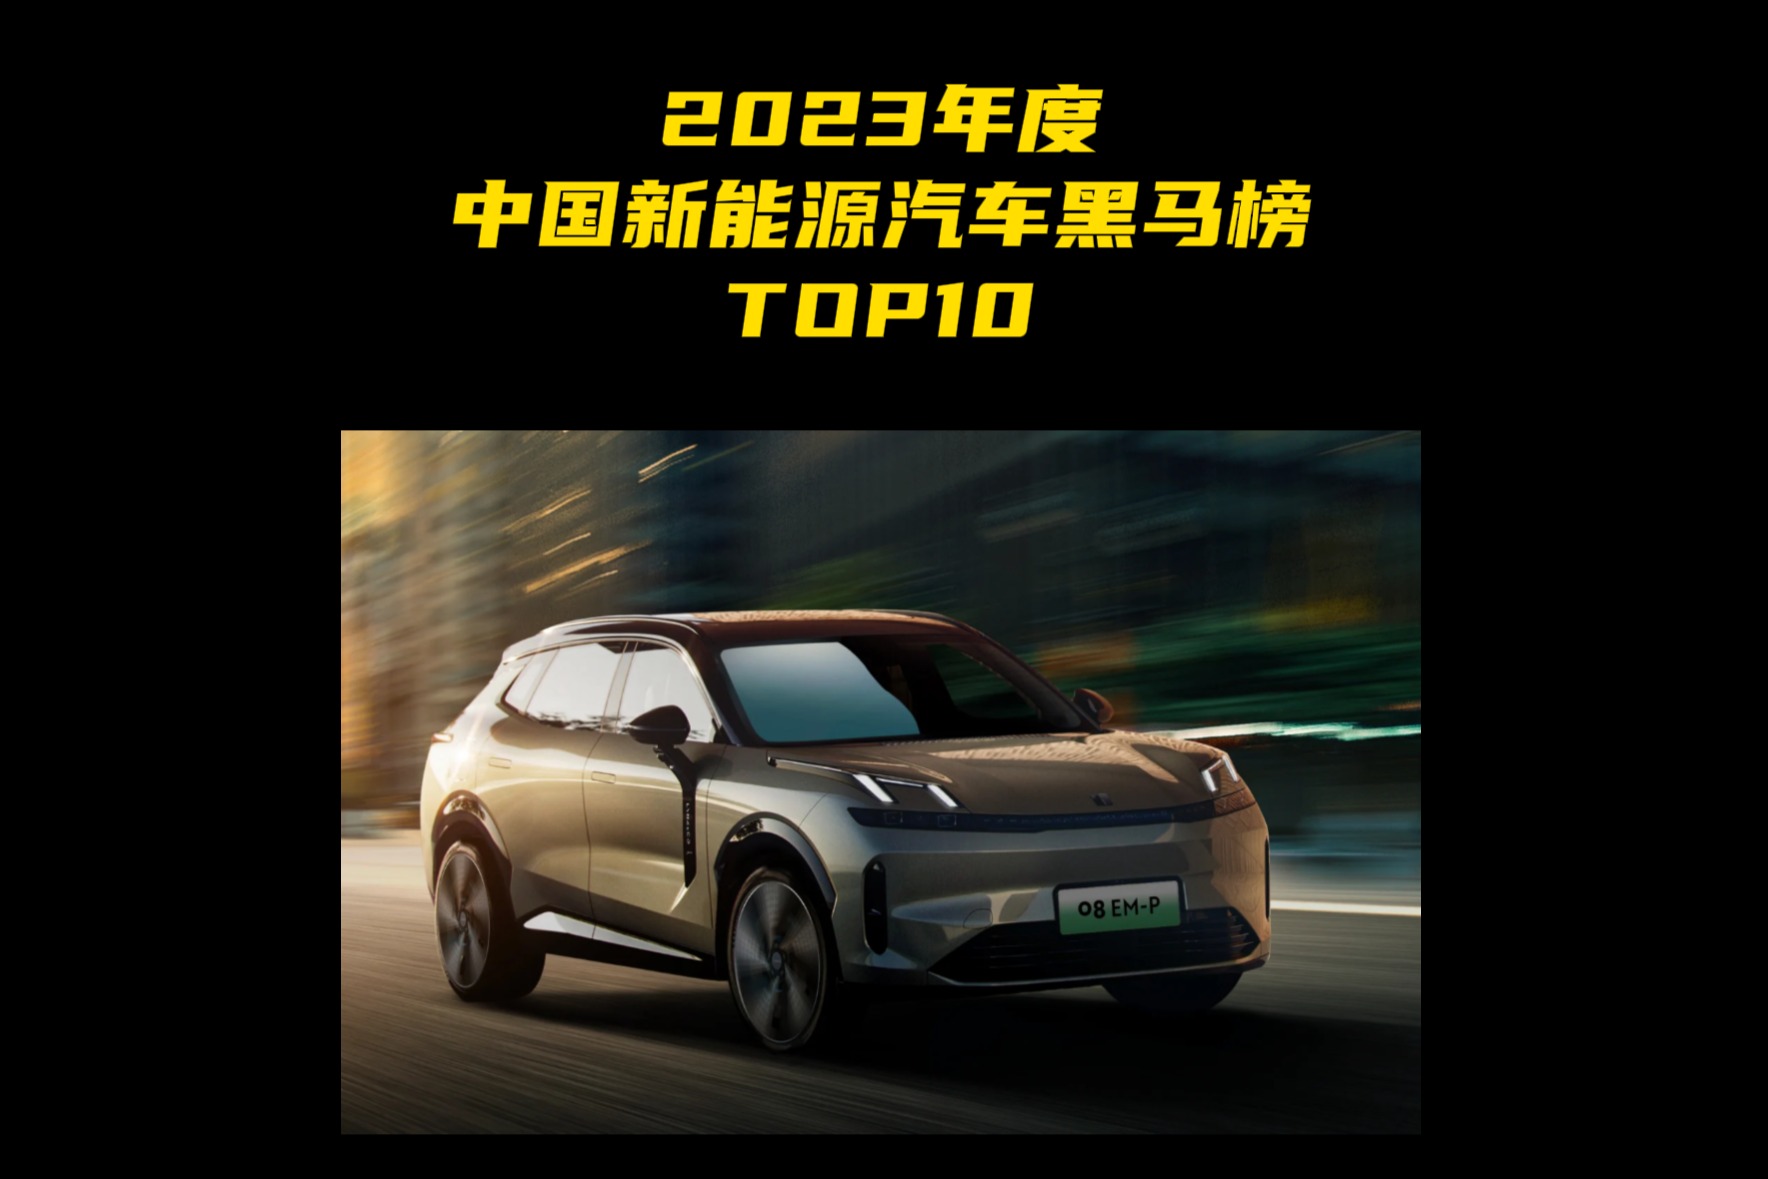 2023年度中国新能源汽车黑马榜TOP10 第五名：领克08 EM-P